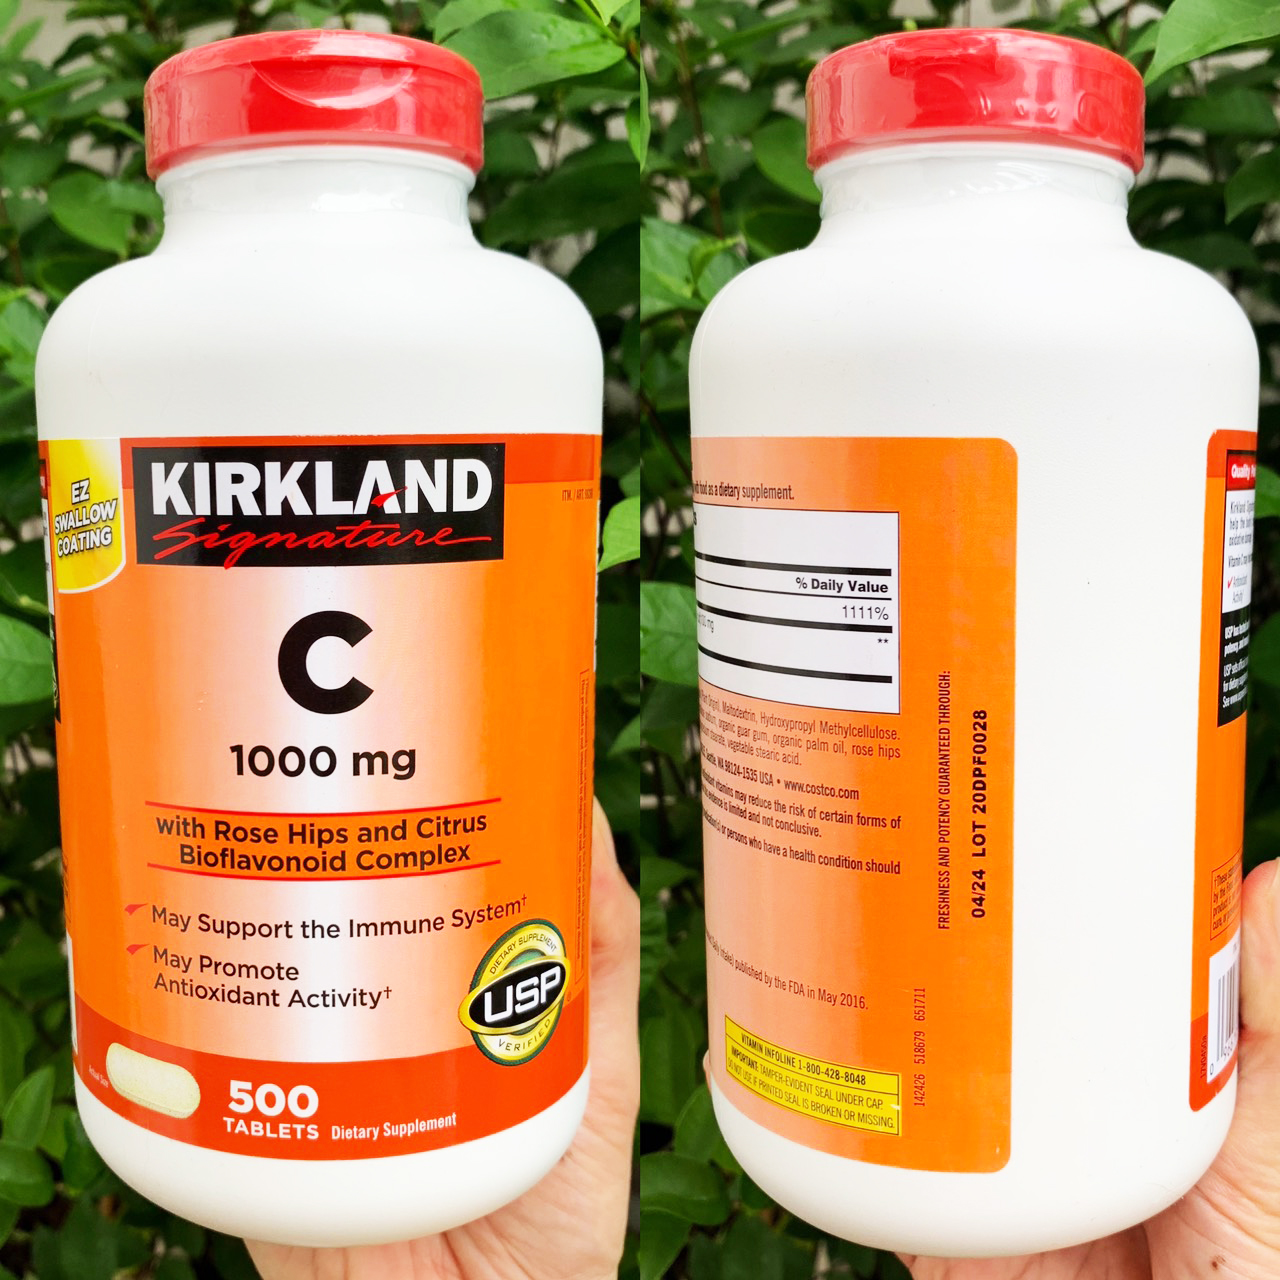 Viên Uống Bổ Sung Vitamin C Kirkland Signature Vitamin C (1000mg x 500 Viên) - giúp tăng cường hệ miễn dịch